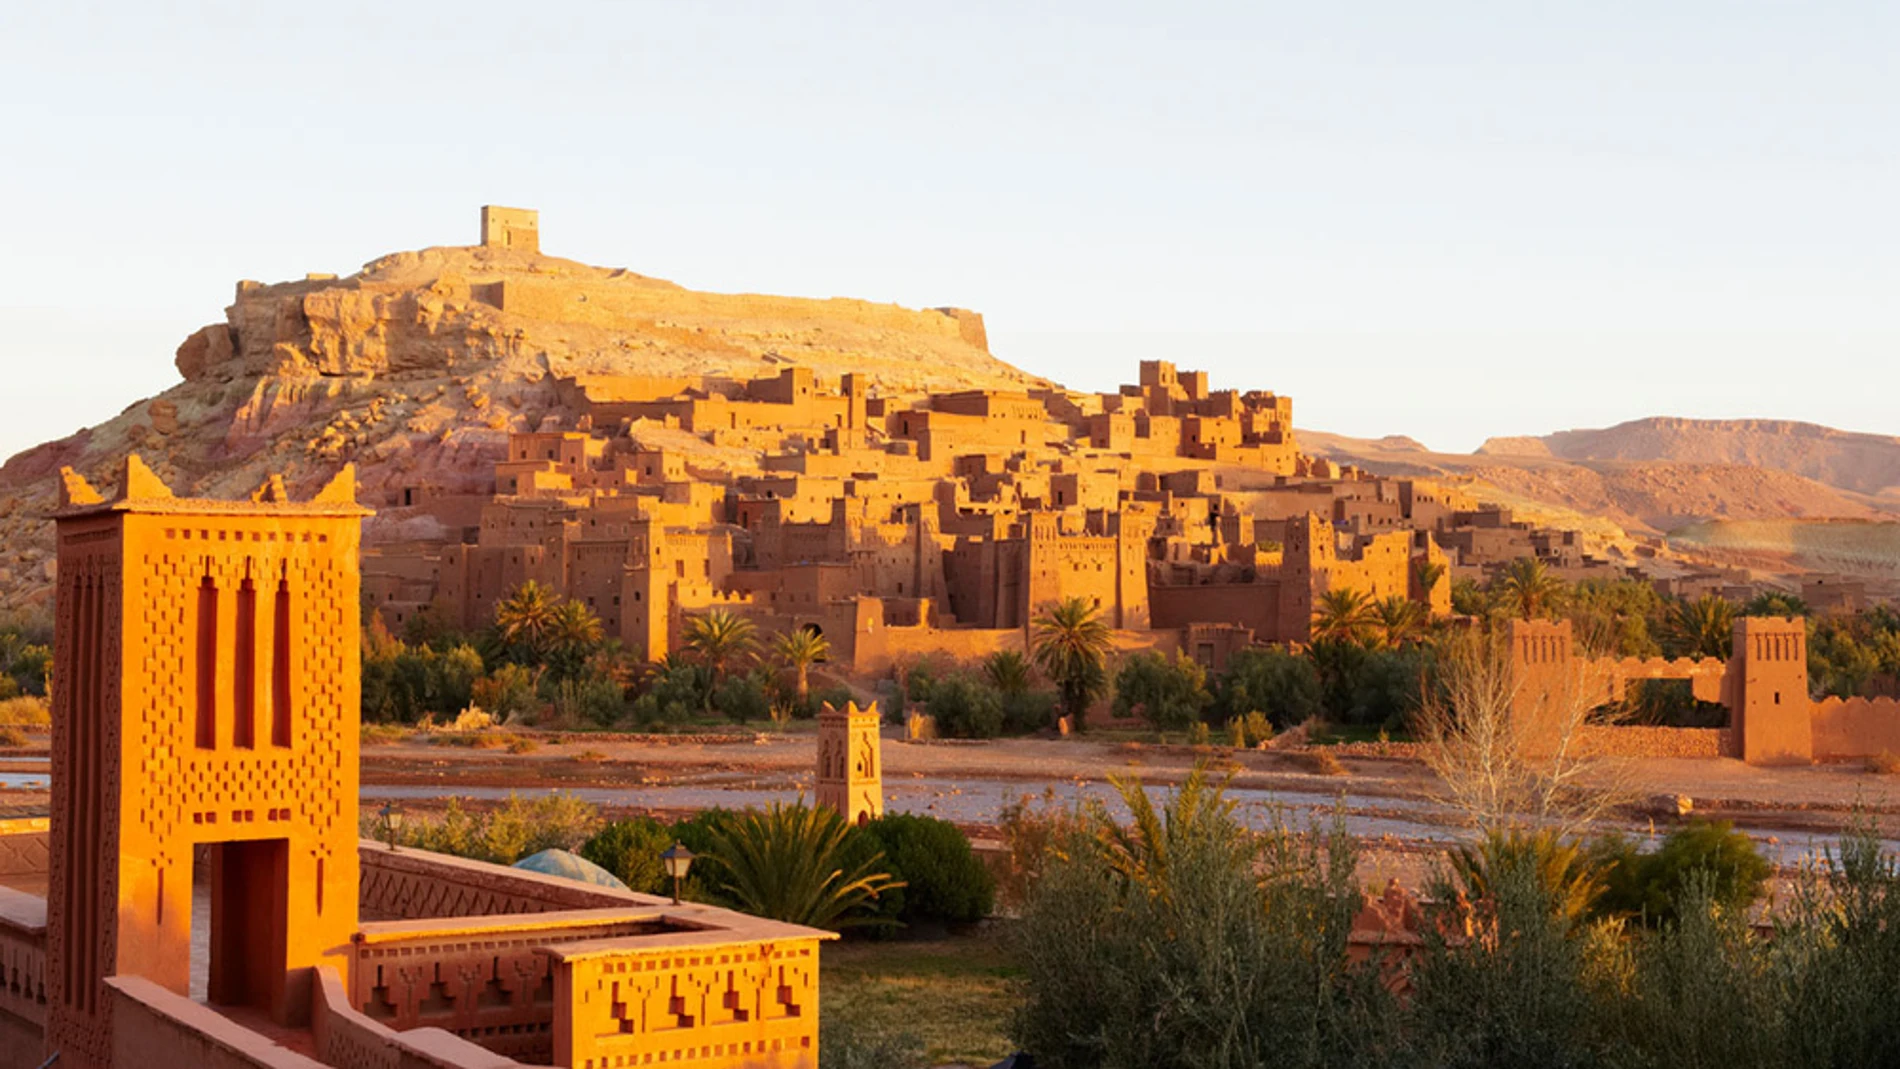 Marruecos es uno de los lugares fetiche de la serie